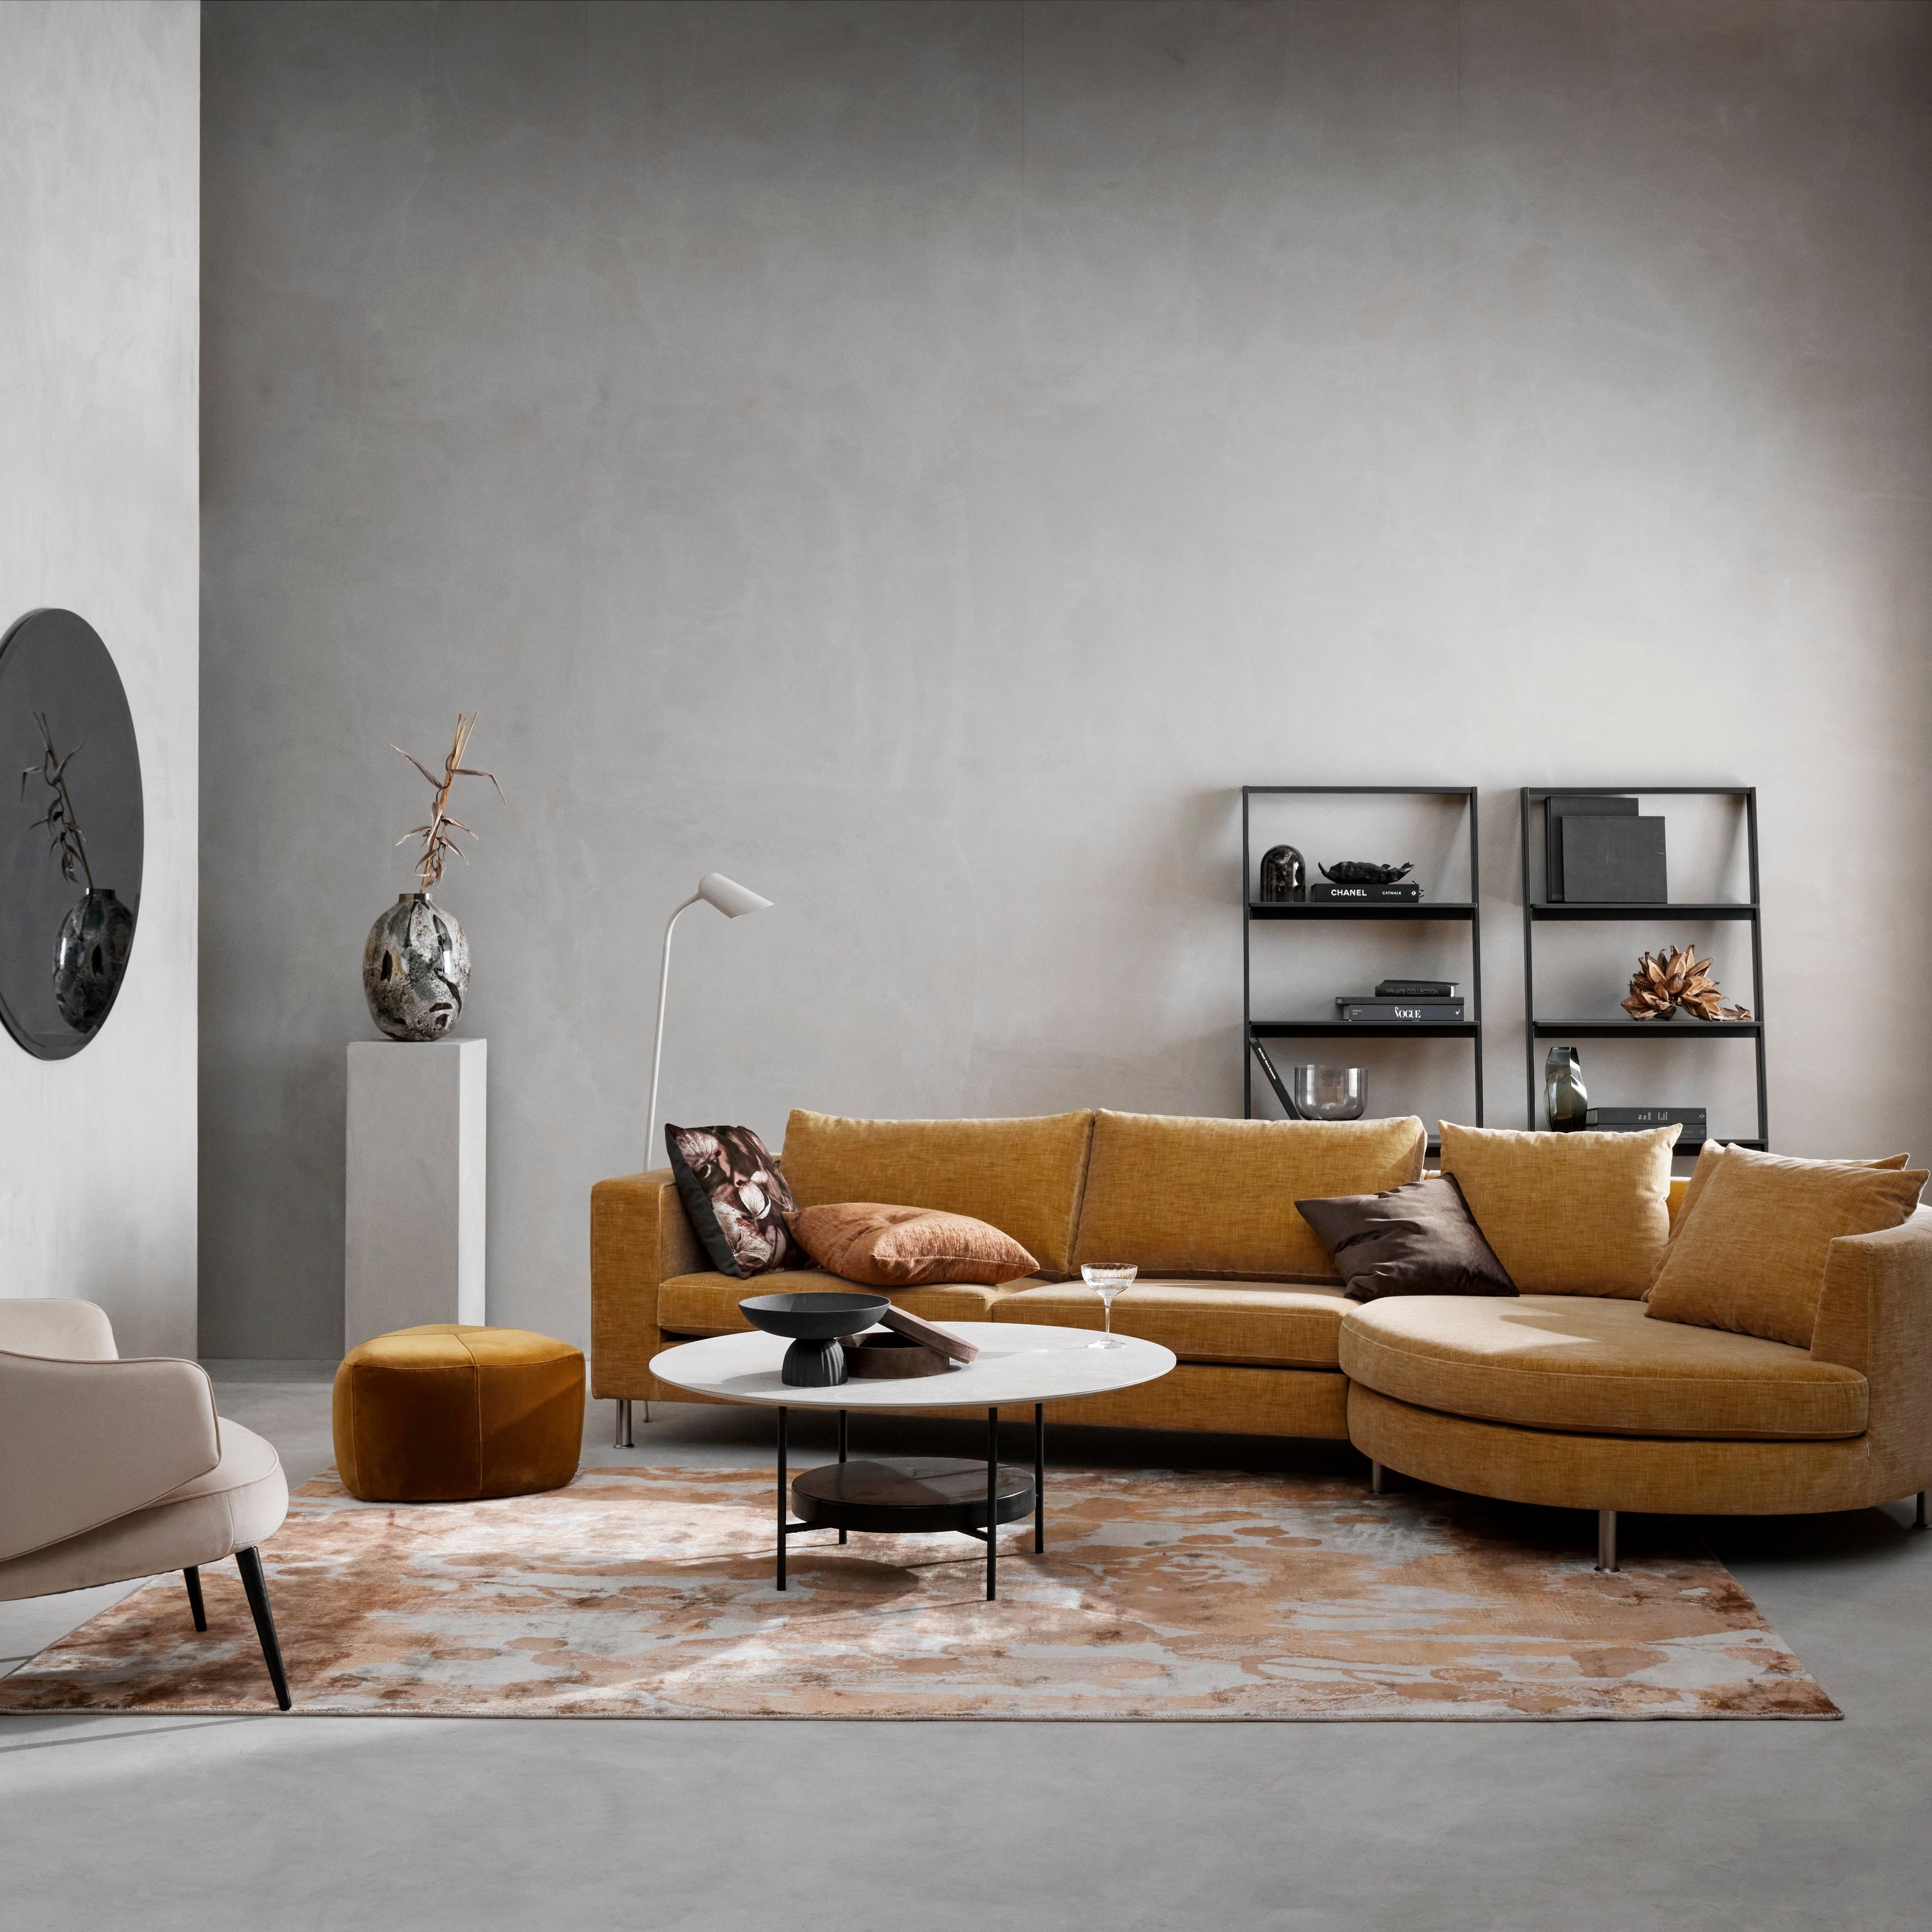 Moderne stue med sennepsfarvet modulsofa, beige stol, mønstret tæppe og minimalistisk indretning.